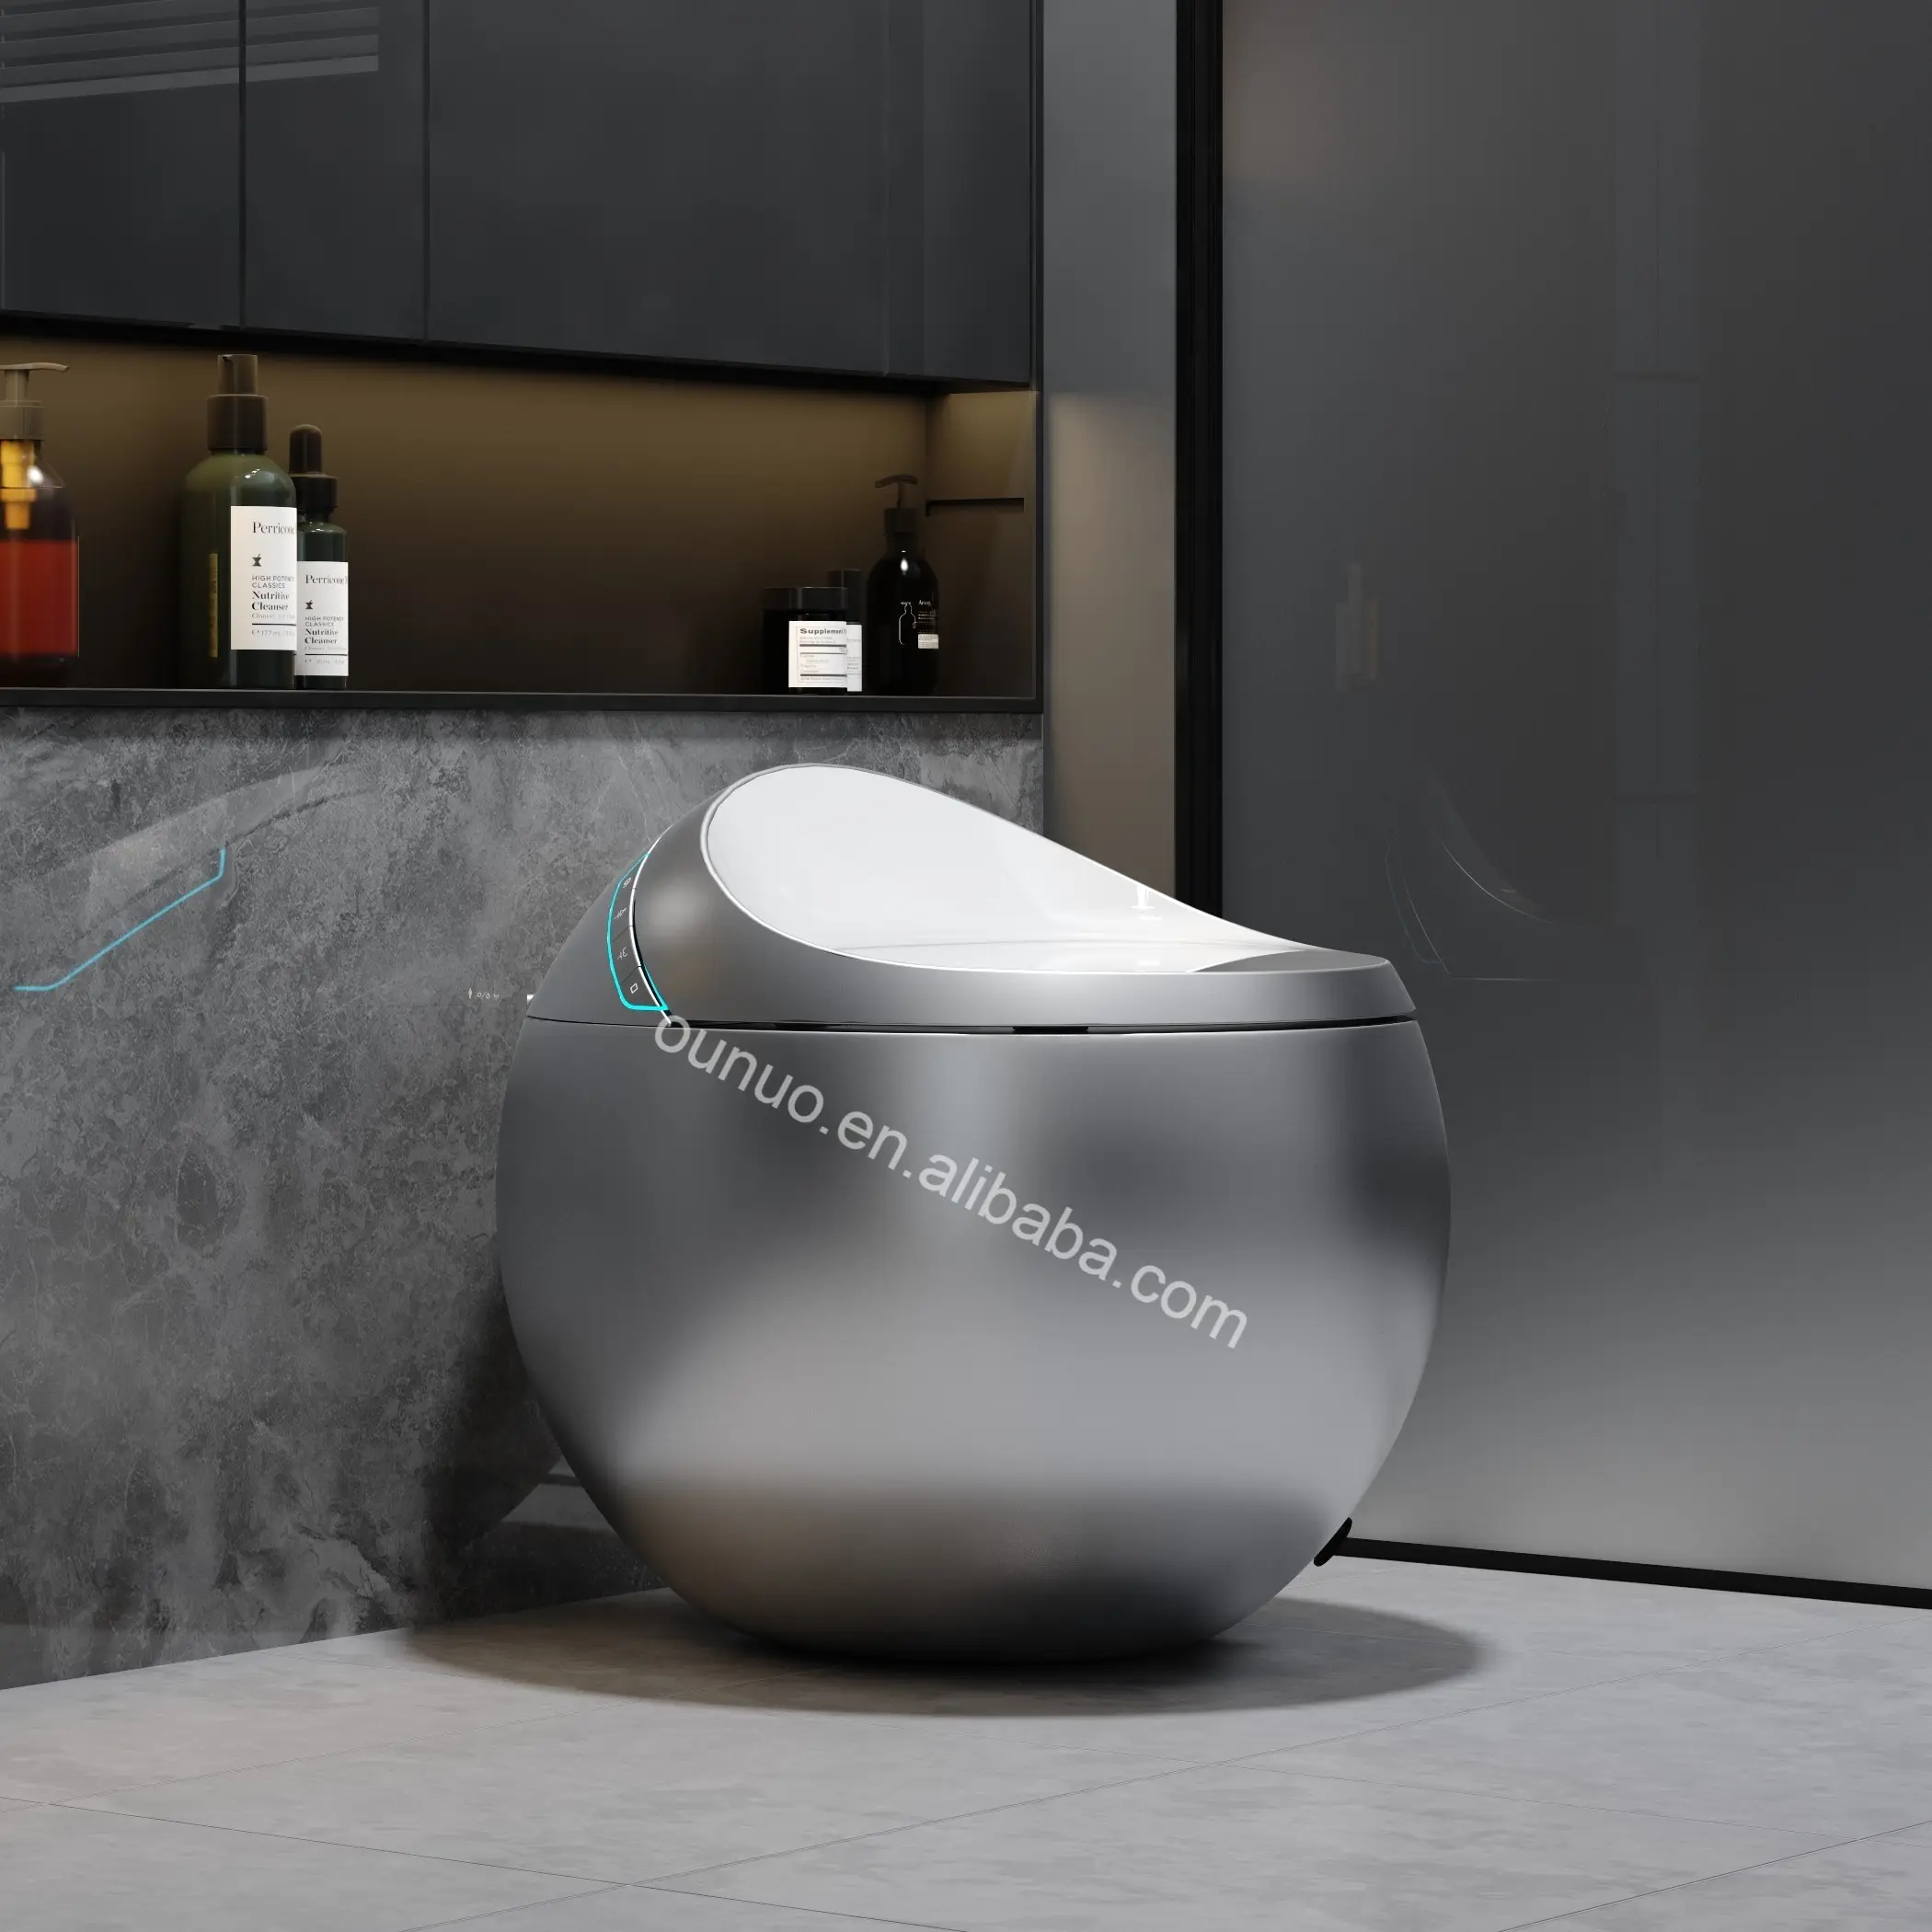 Pistol warna abu-abu bentuk telur otomatis satu bagian mangkuk toilet bidet mewah lantai dipasang wc cerdas inodoro kamar mandi smart toilet